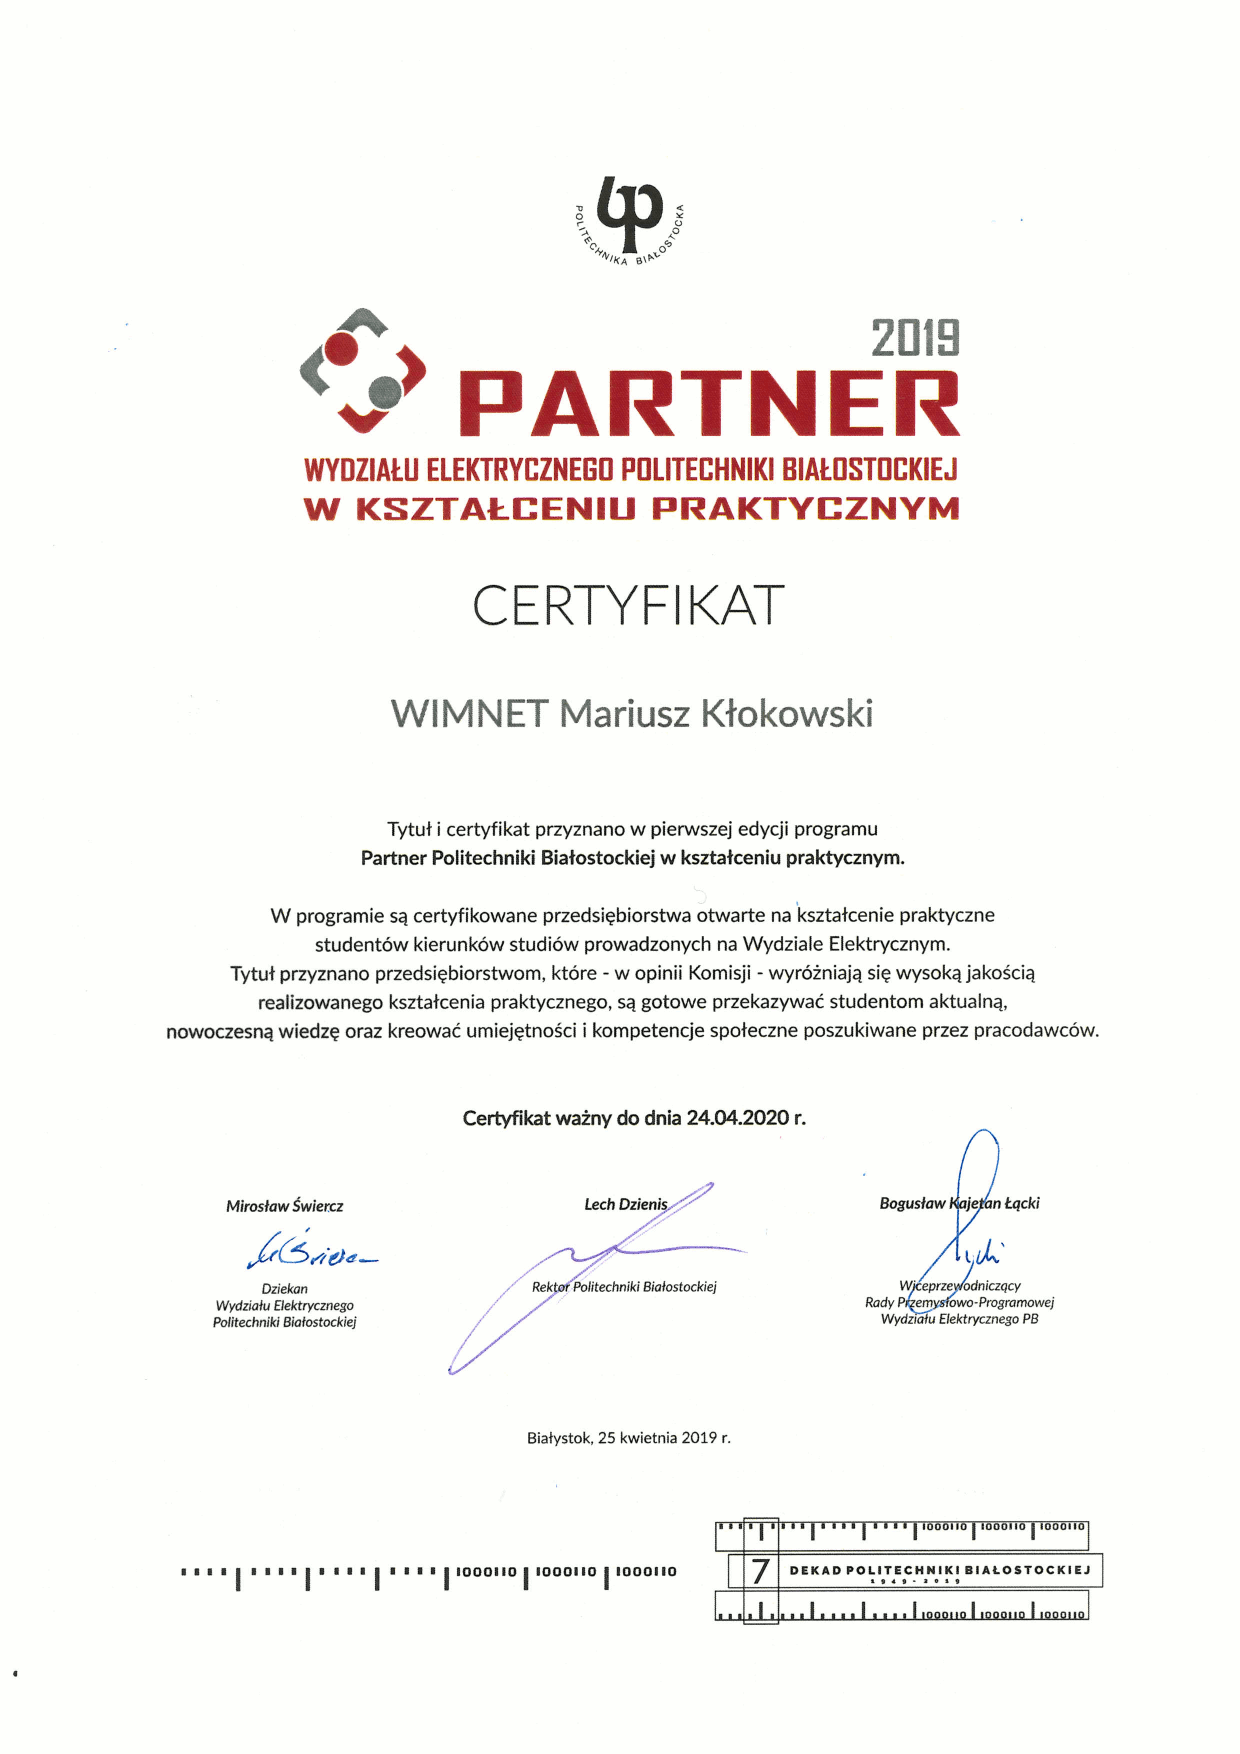 Certyfikat Partnera w kształceniu praktycznym - WIMNET